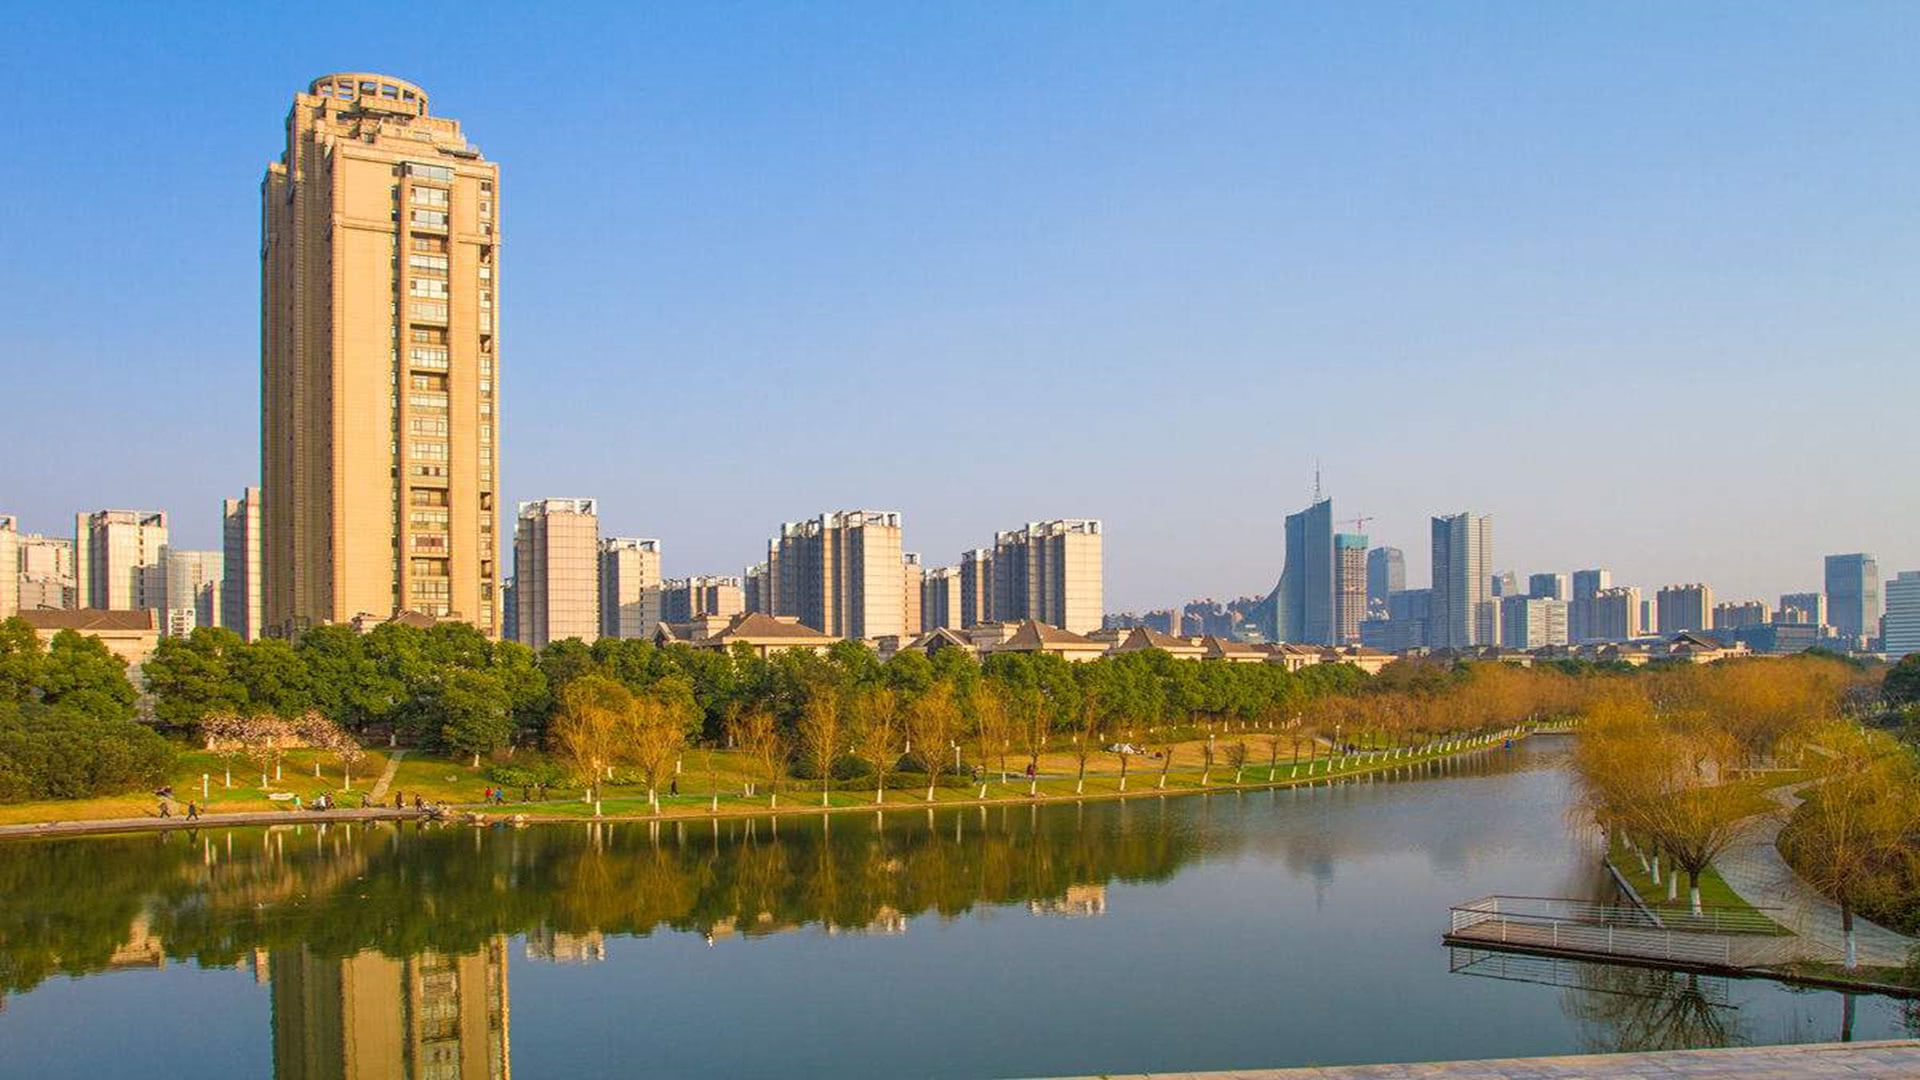 安徽最大的城市,确实轮不到芜湖,就算蚌埠联合